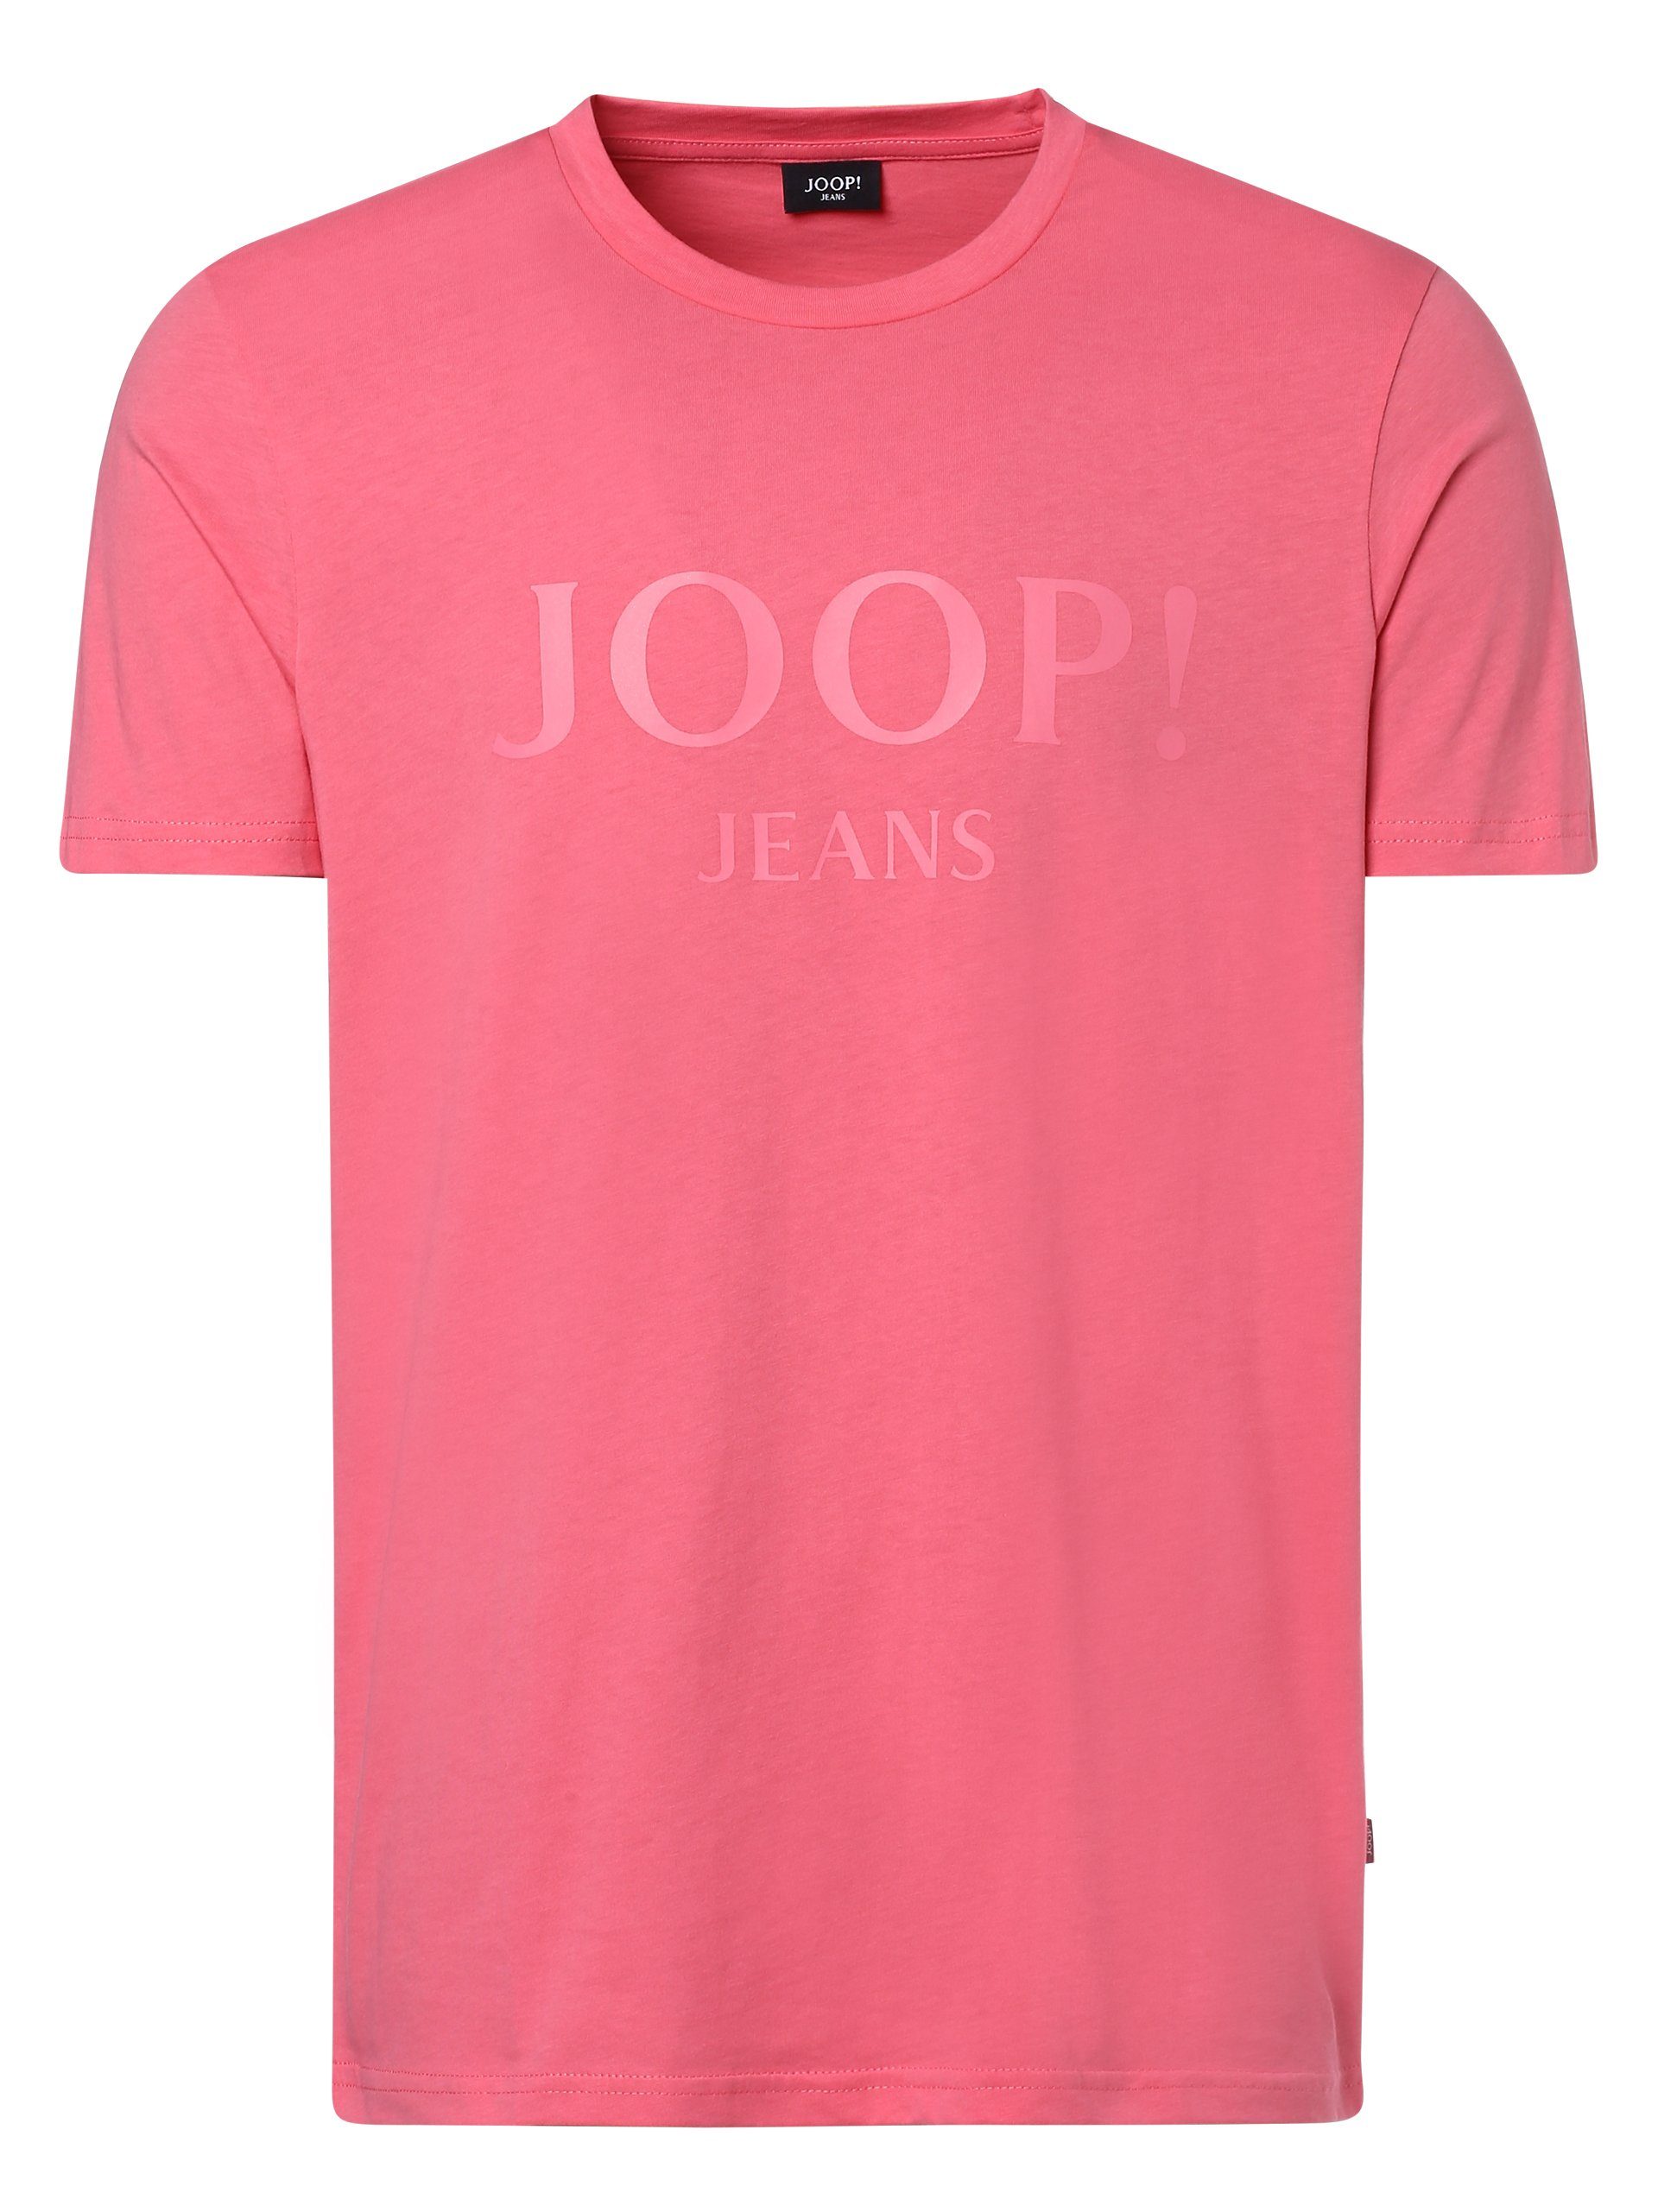 Joop Jeans Joop! T-Shirt Alex koralle